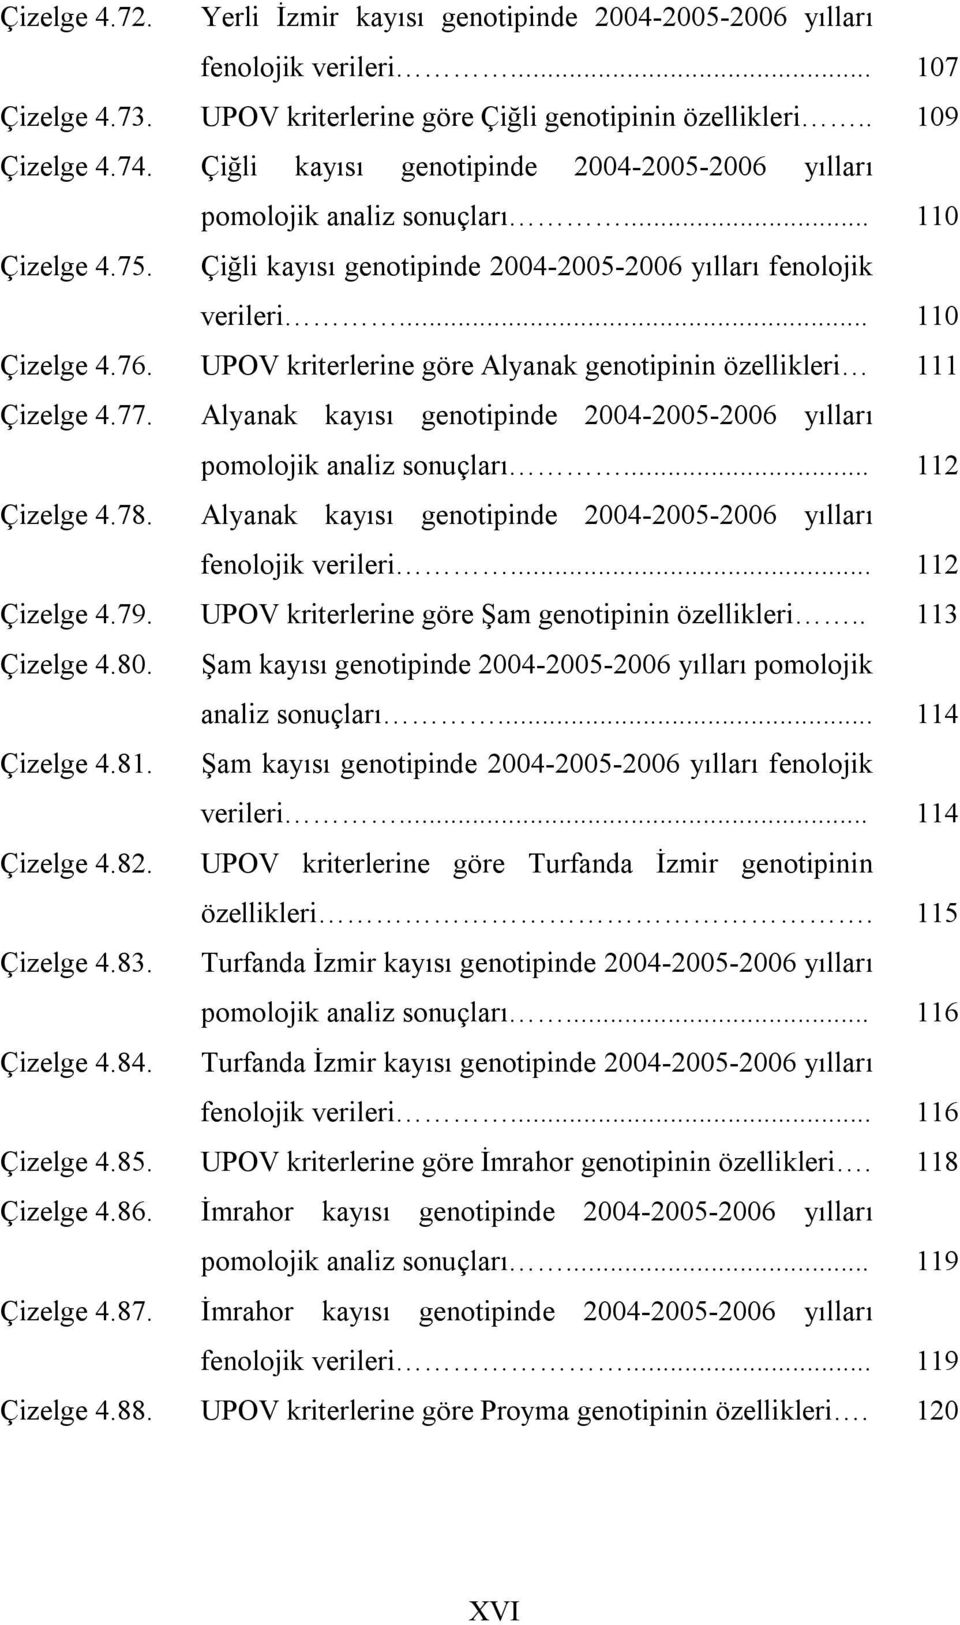 UPOV kriterlerine göre Alyanak genotipinin özellikleri 111 Çizelge 4.77. Alyanak kayısı genotipinde 2004-2005-2006 yılları pomolojik analiz sonuçları... 112 Çizelge 4.78.